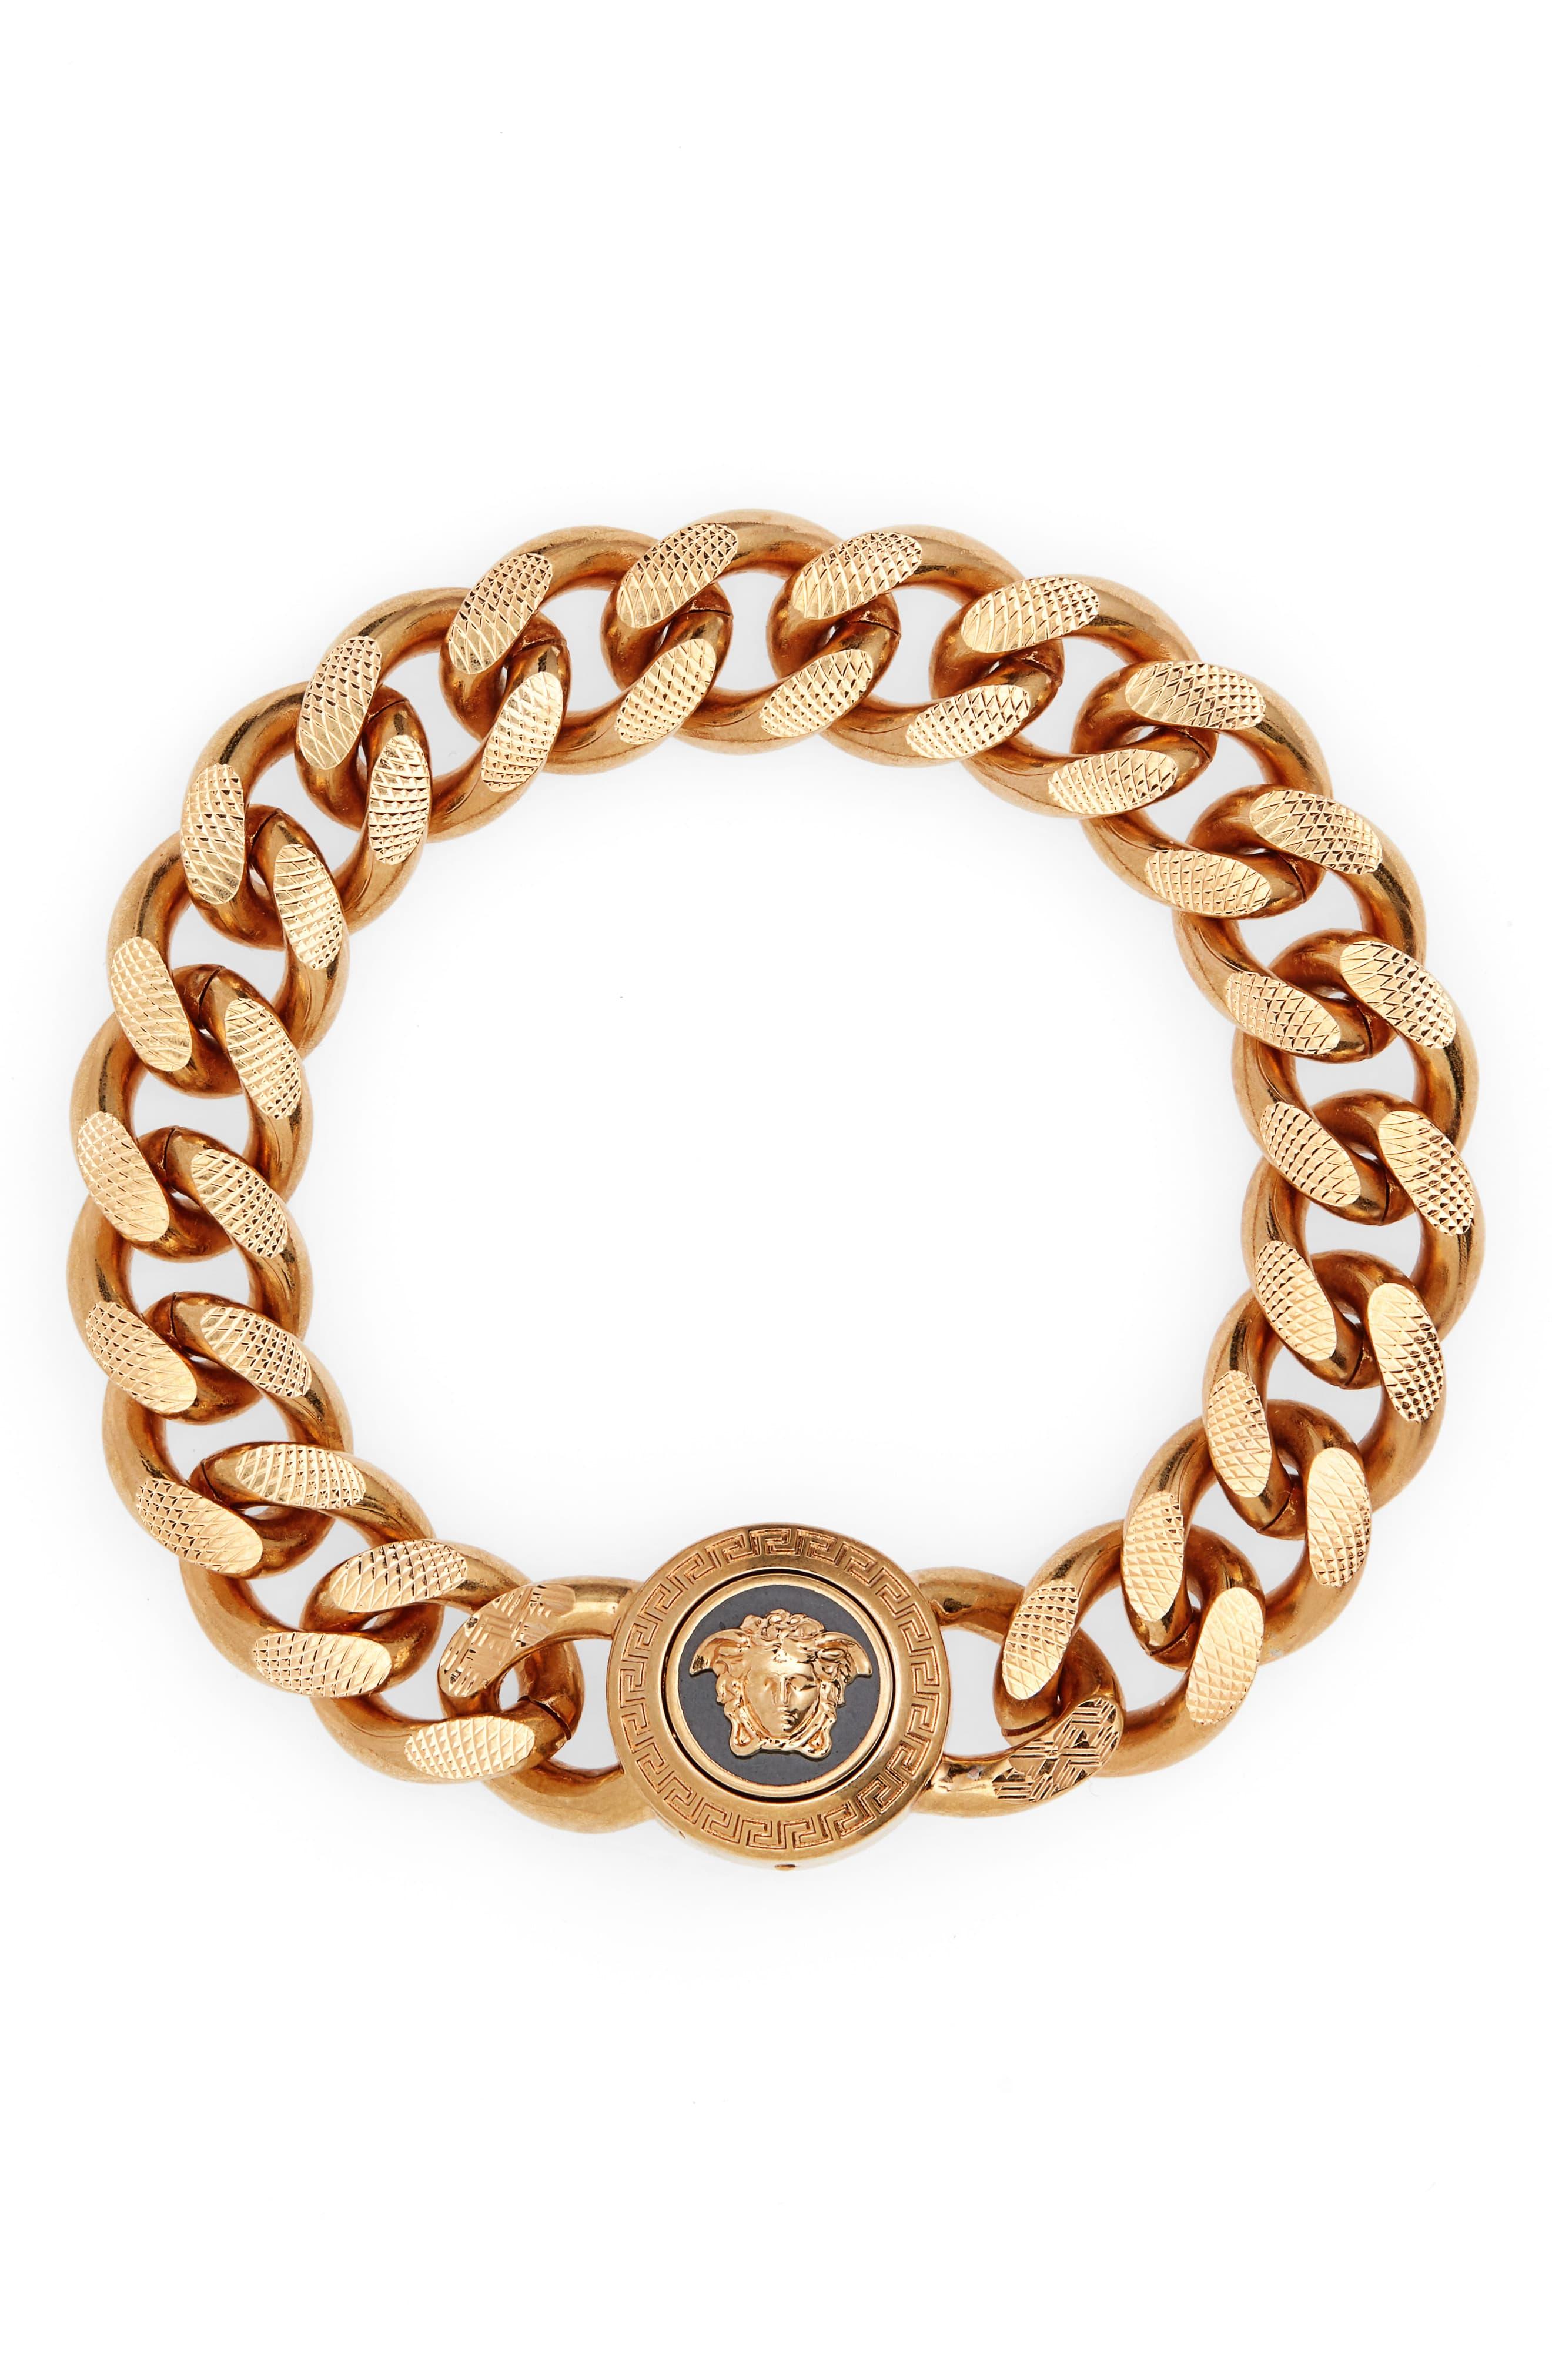 Versace Medusa Chain Bracelet in 